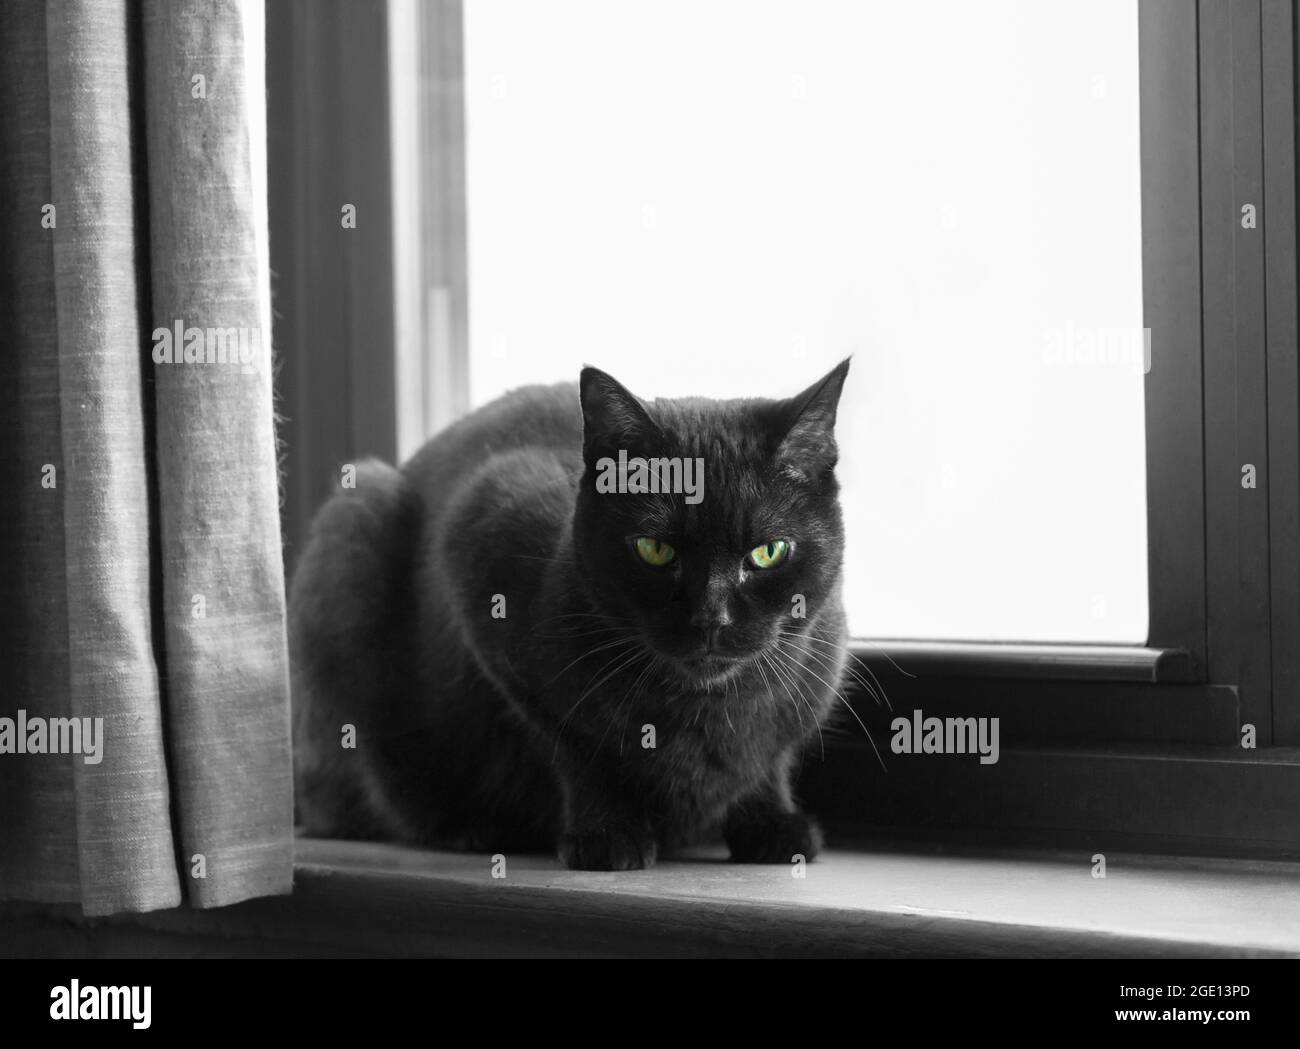 Eine schwarze Katze mit grünen Augen schaut direkt auf die Kamera, während sie auf einer Fensterbank vor einem Fenster sitzt, Platz kopieren Stockfoto